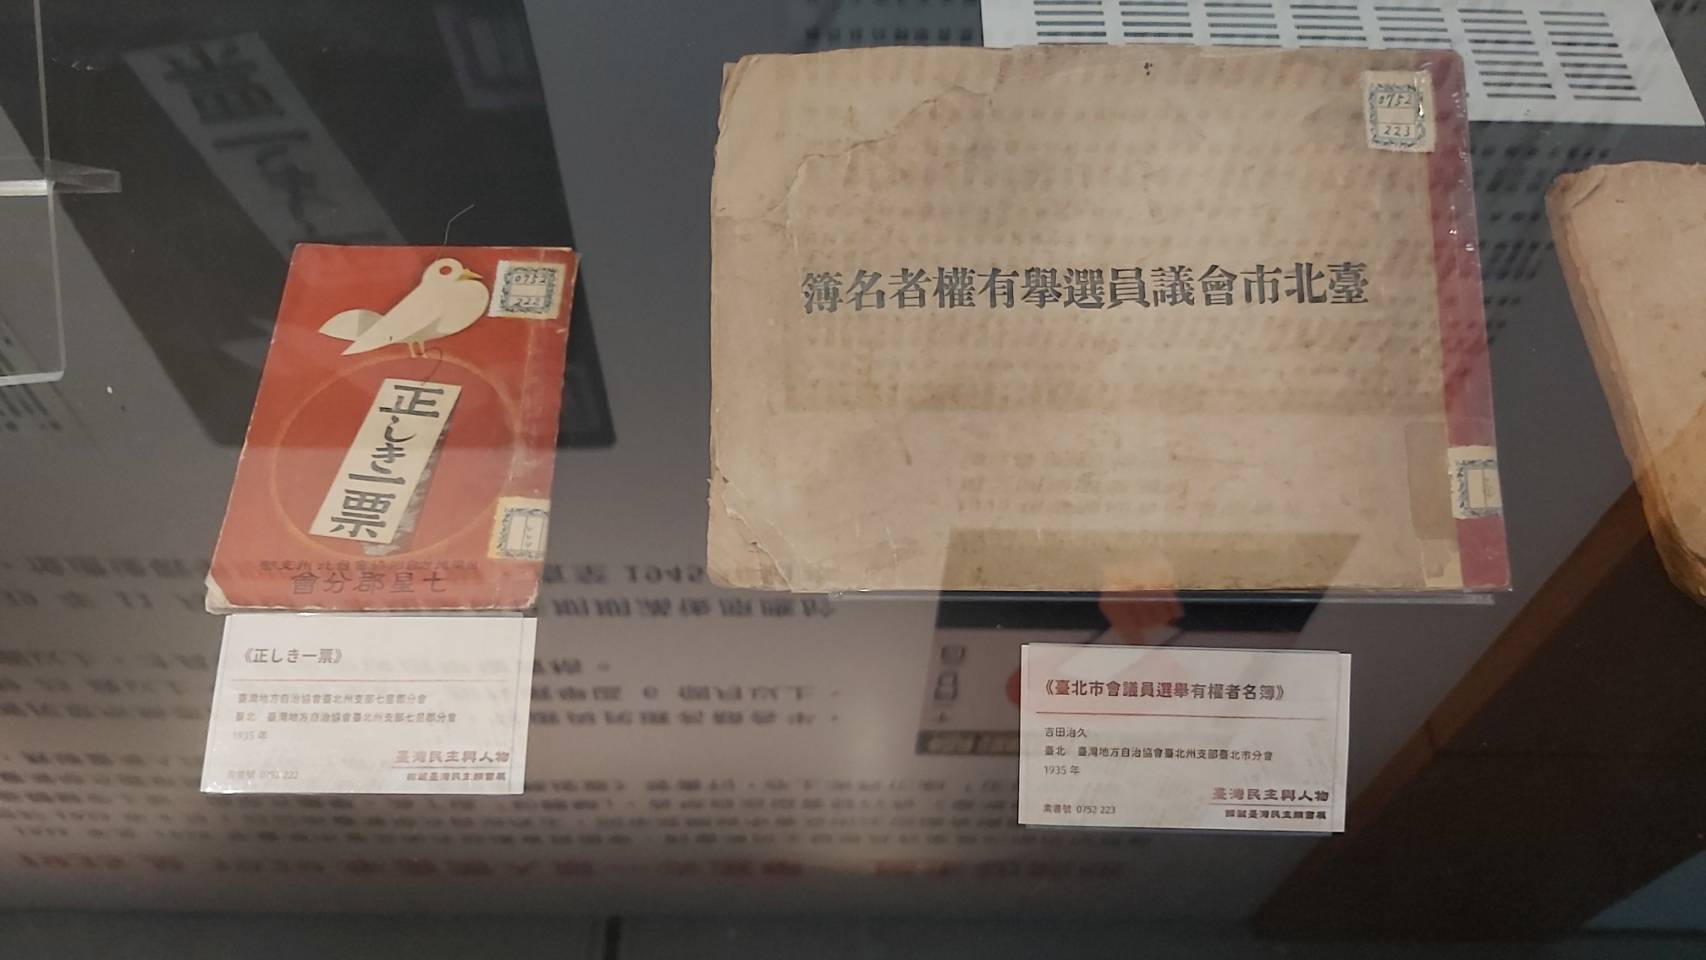 《正確的一票》則以演戲方式教民眾投票，還有《昭和十四年度臺北市會議員選舉有權者名簿》(1939年)則詳細記載當時有投票權人的名冊。